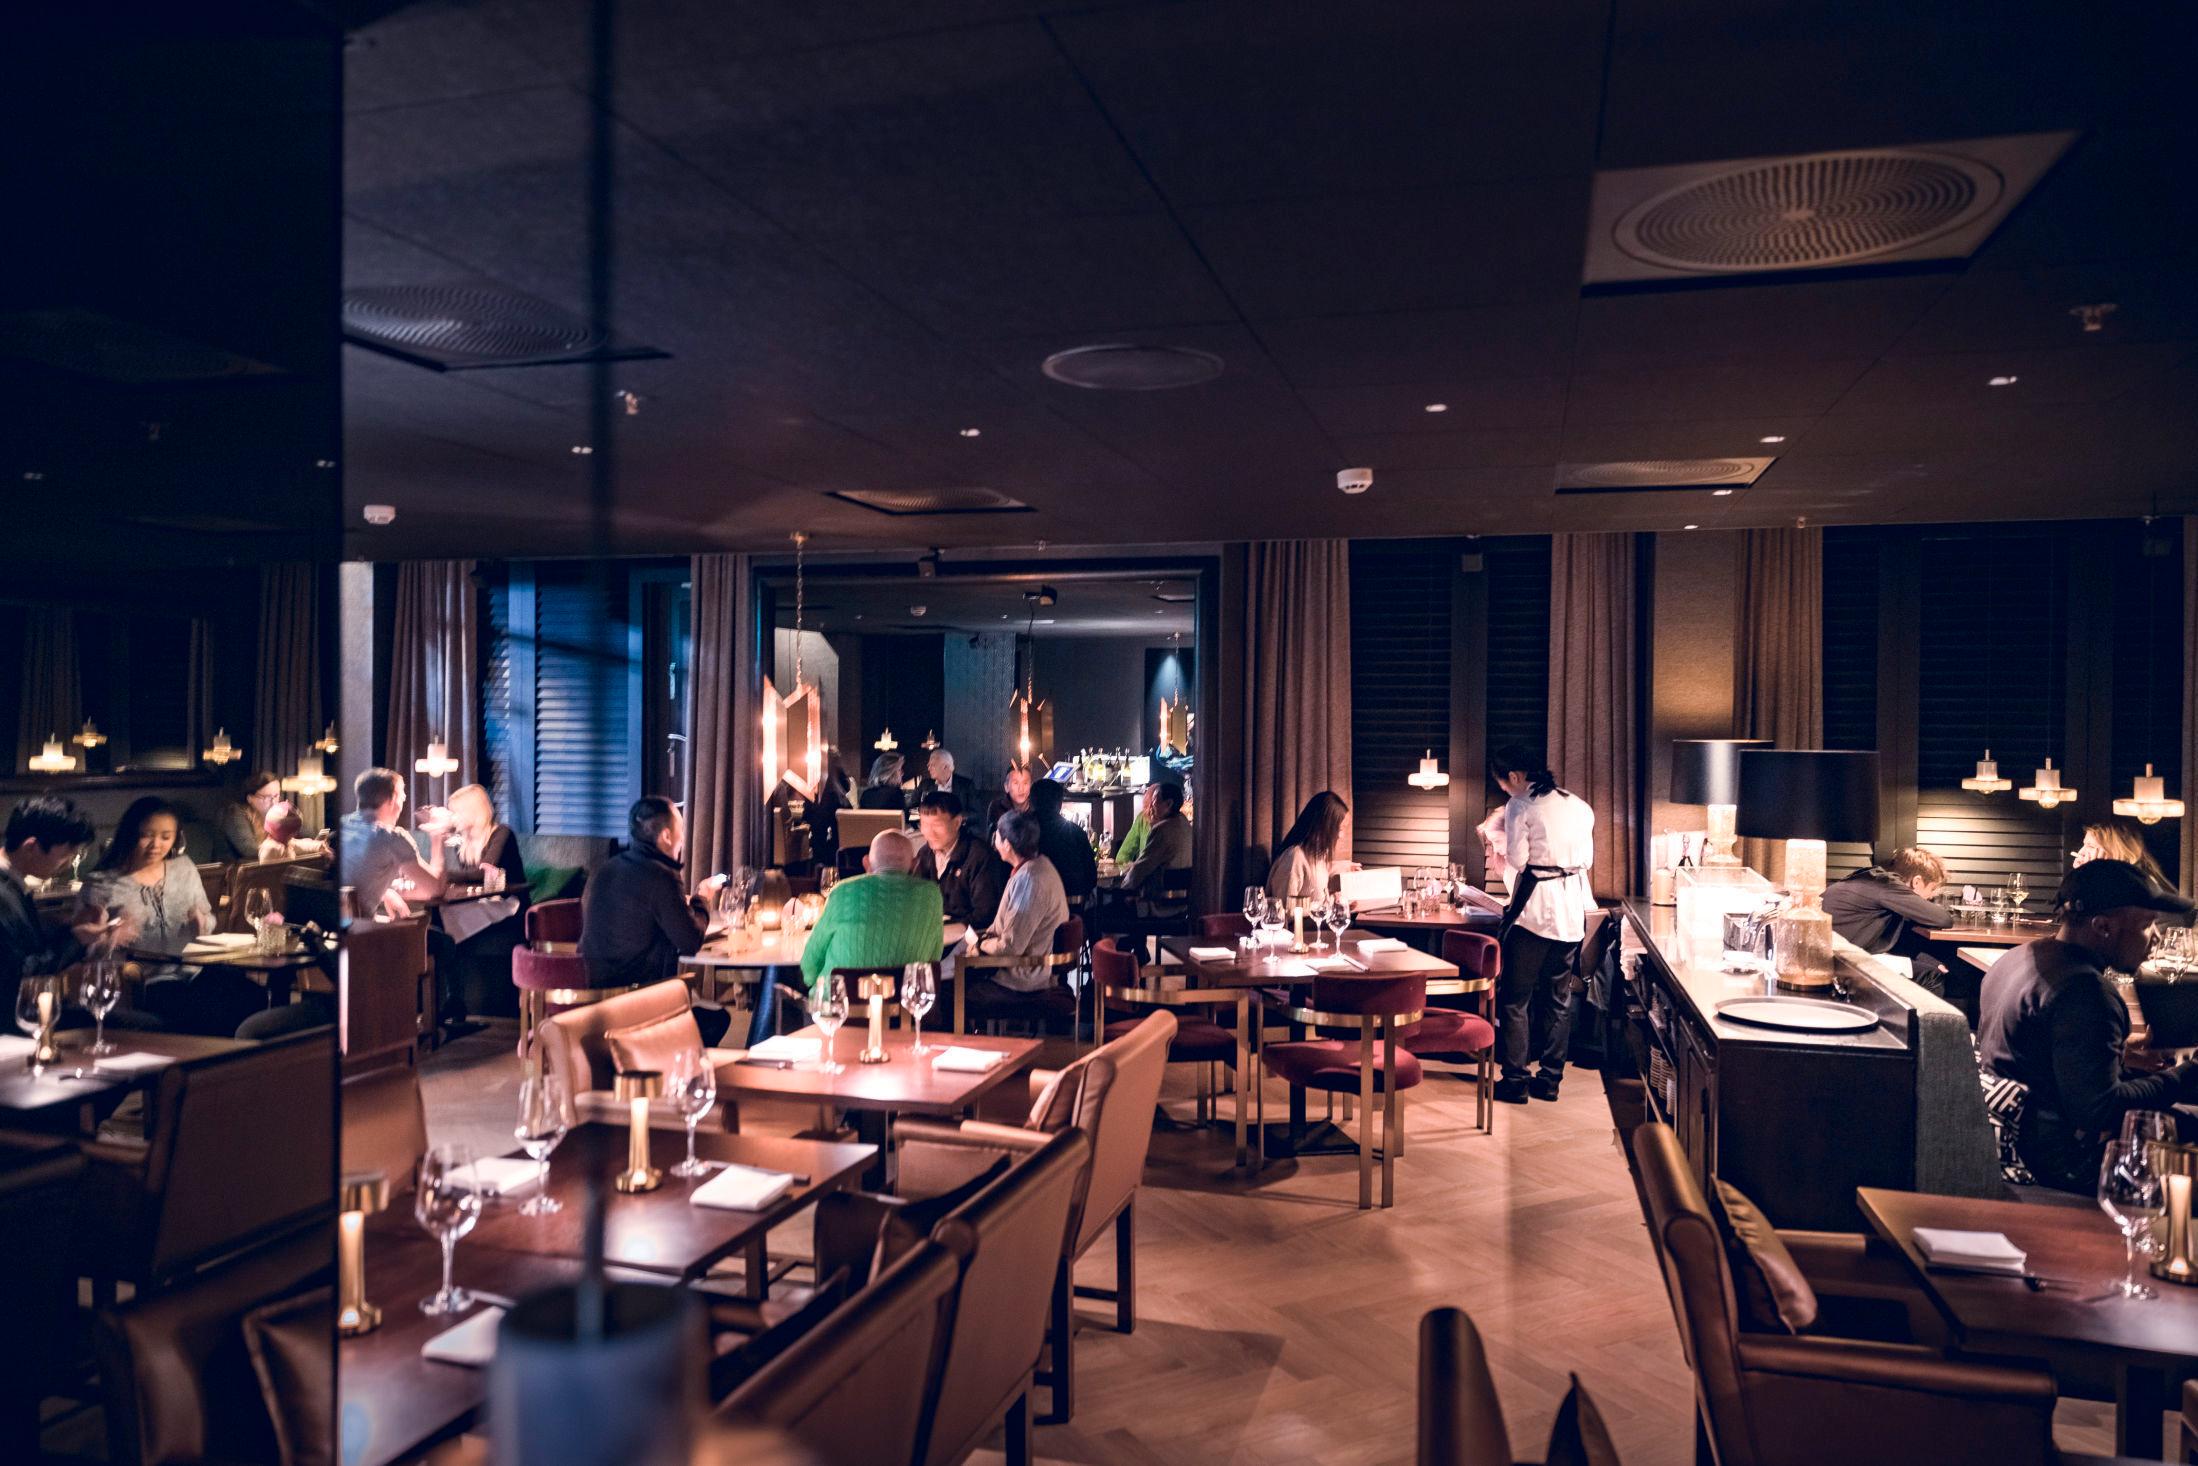 PEN RESTAURANT: VGs anmelder skryter av den gode atmosfæren i restauranten. Foto: KRISTER SØRBØ, VG